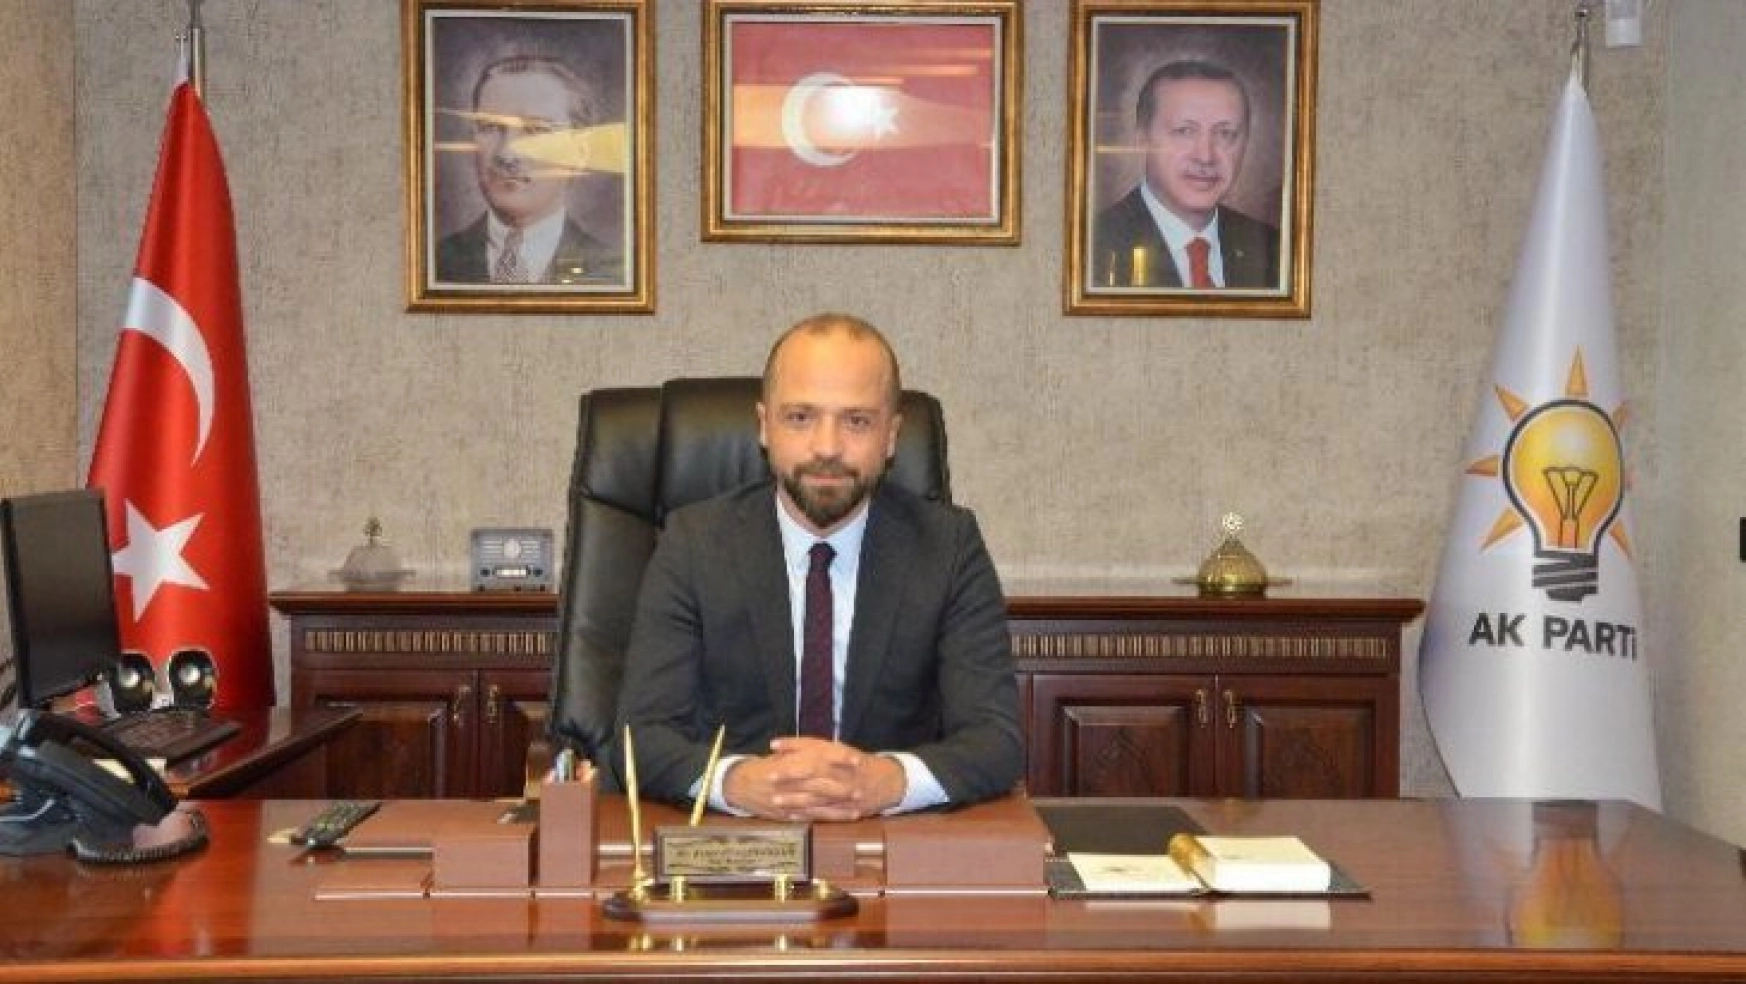 AK Parti Sincan İlçe Başkanı Arslanargun'dan 30 Ağustos Zafer Bayramı mesajı